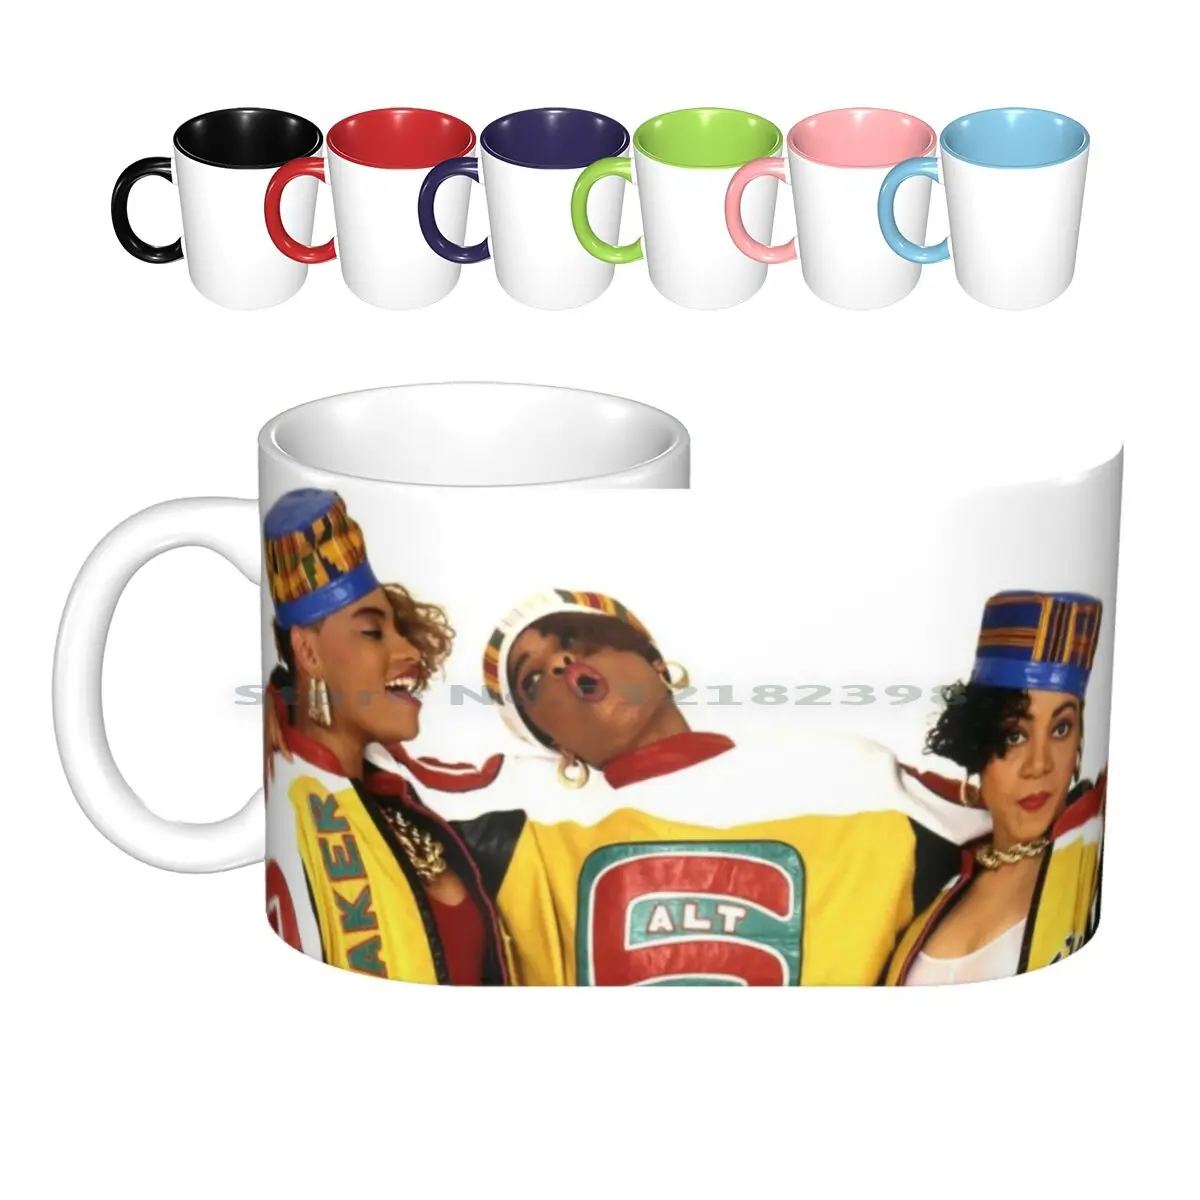 https://ae01.alicdn.com/kf/Hacd6650a306c4e2b9fa49a352c720891I/90-s-Flash-Back-Salt-N-Pepa-Ceramic-Mugs-Coffee-Cups-Milk-Tea-Mug-90s-Hiphop.jpg